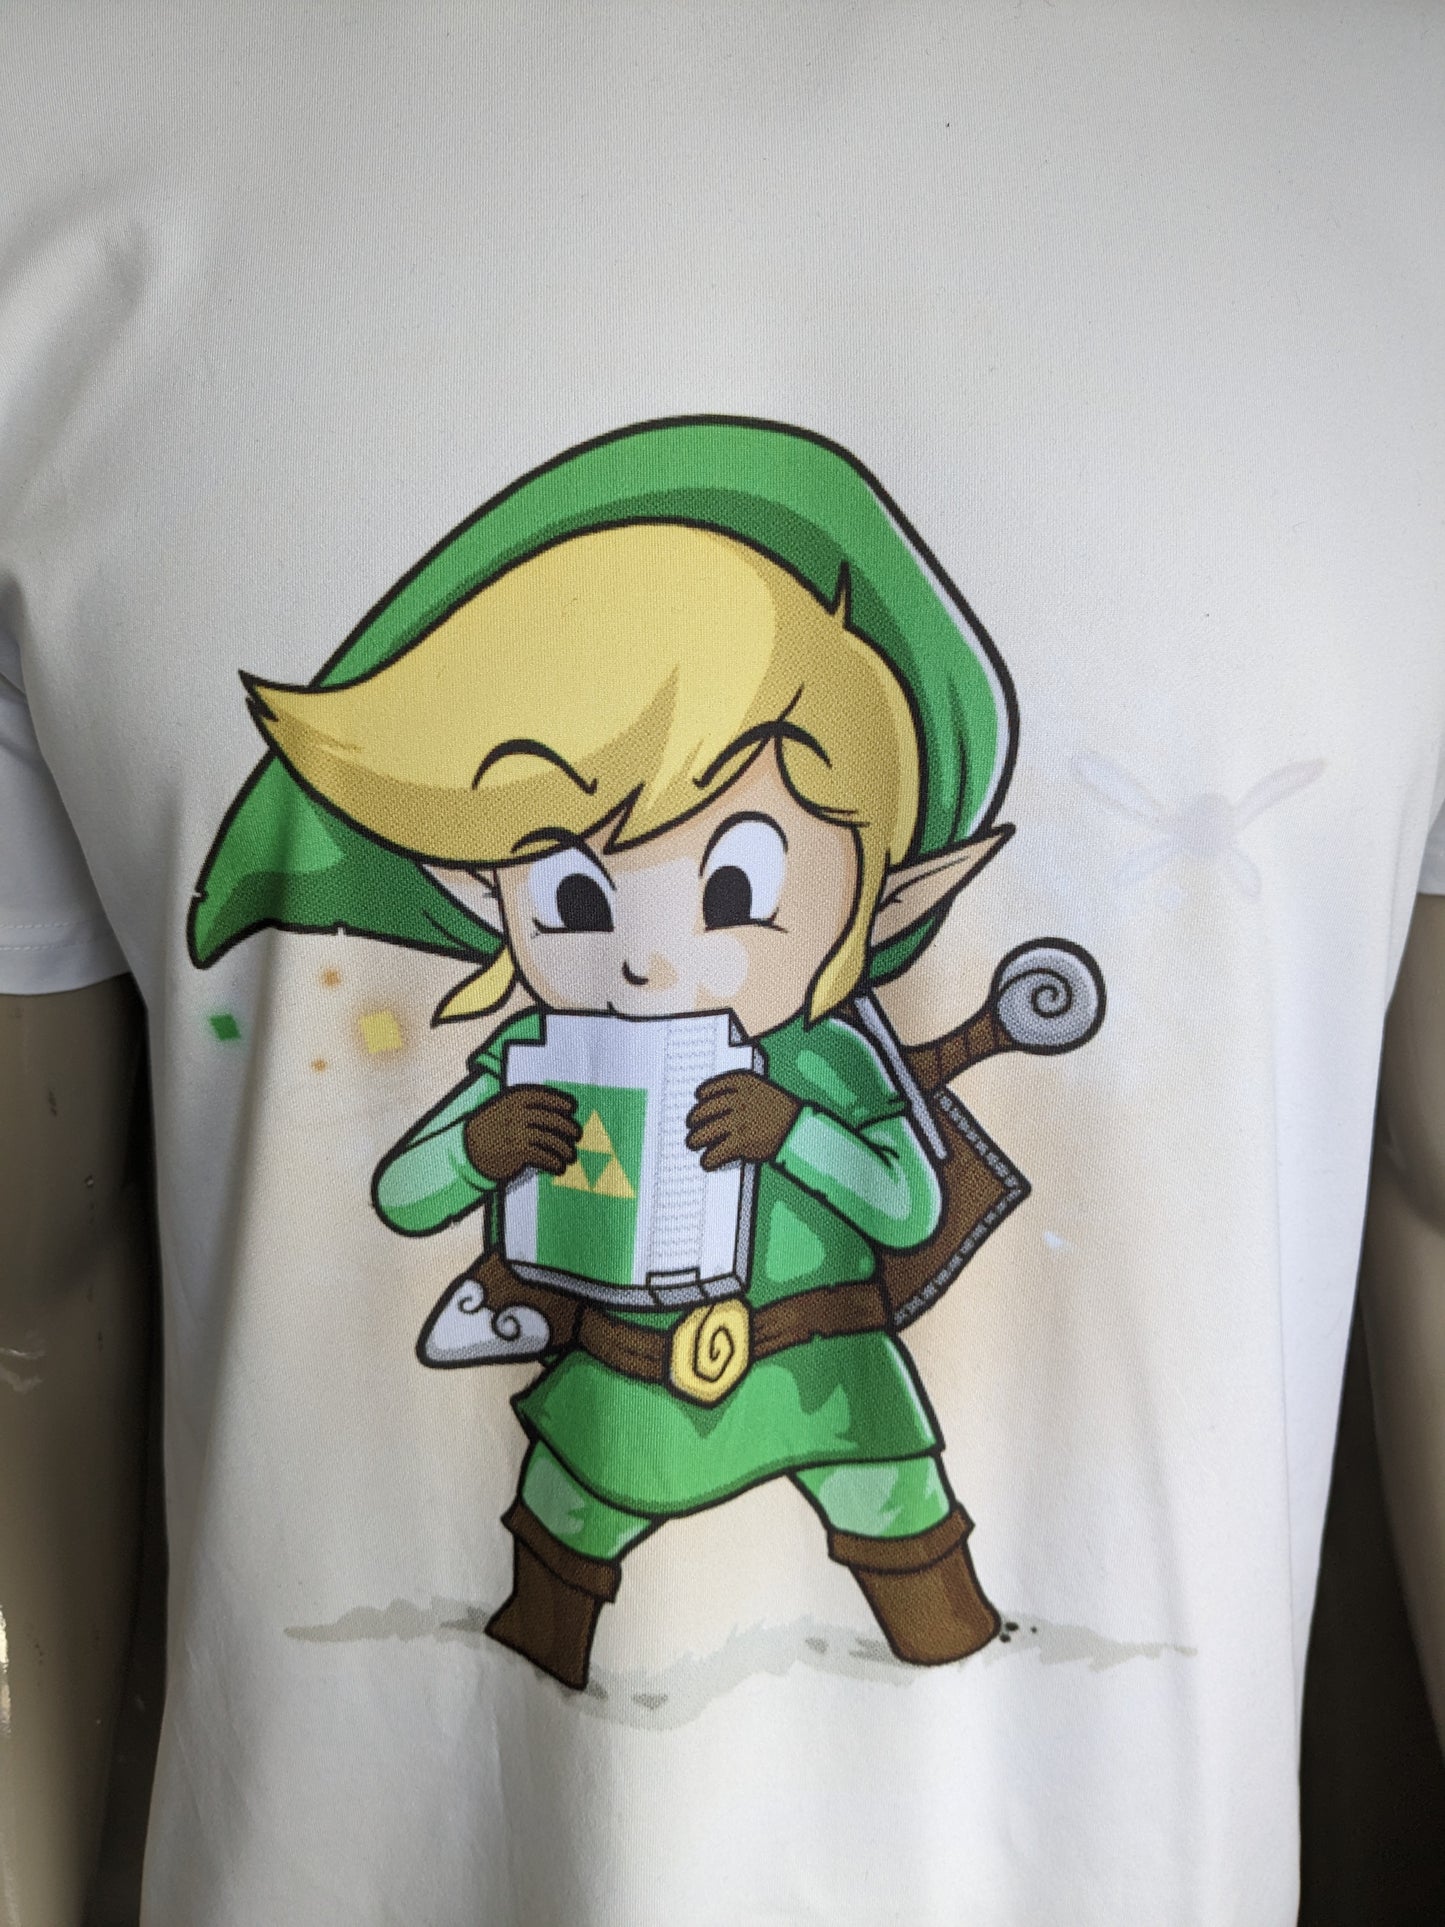 Zelda shirt. Wit met opdruk. Maat L.